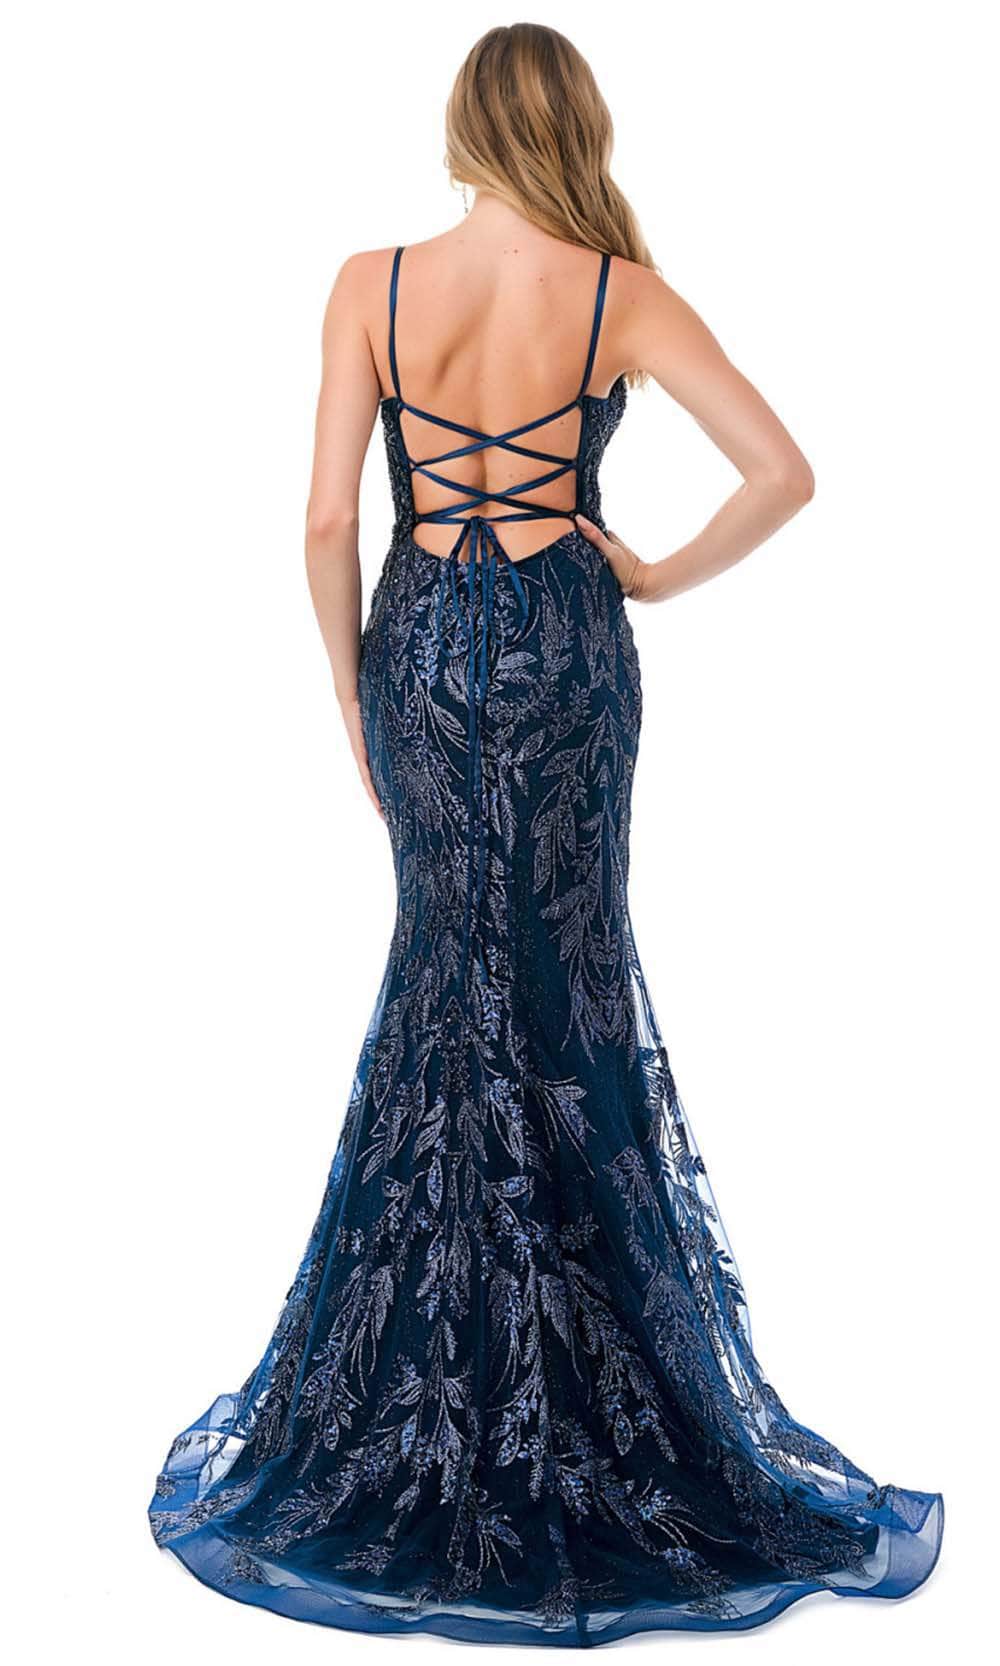 Aspeed Design L2777B - Spaghetti Straps Mermaid Prom Dress